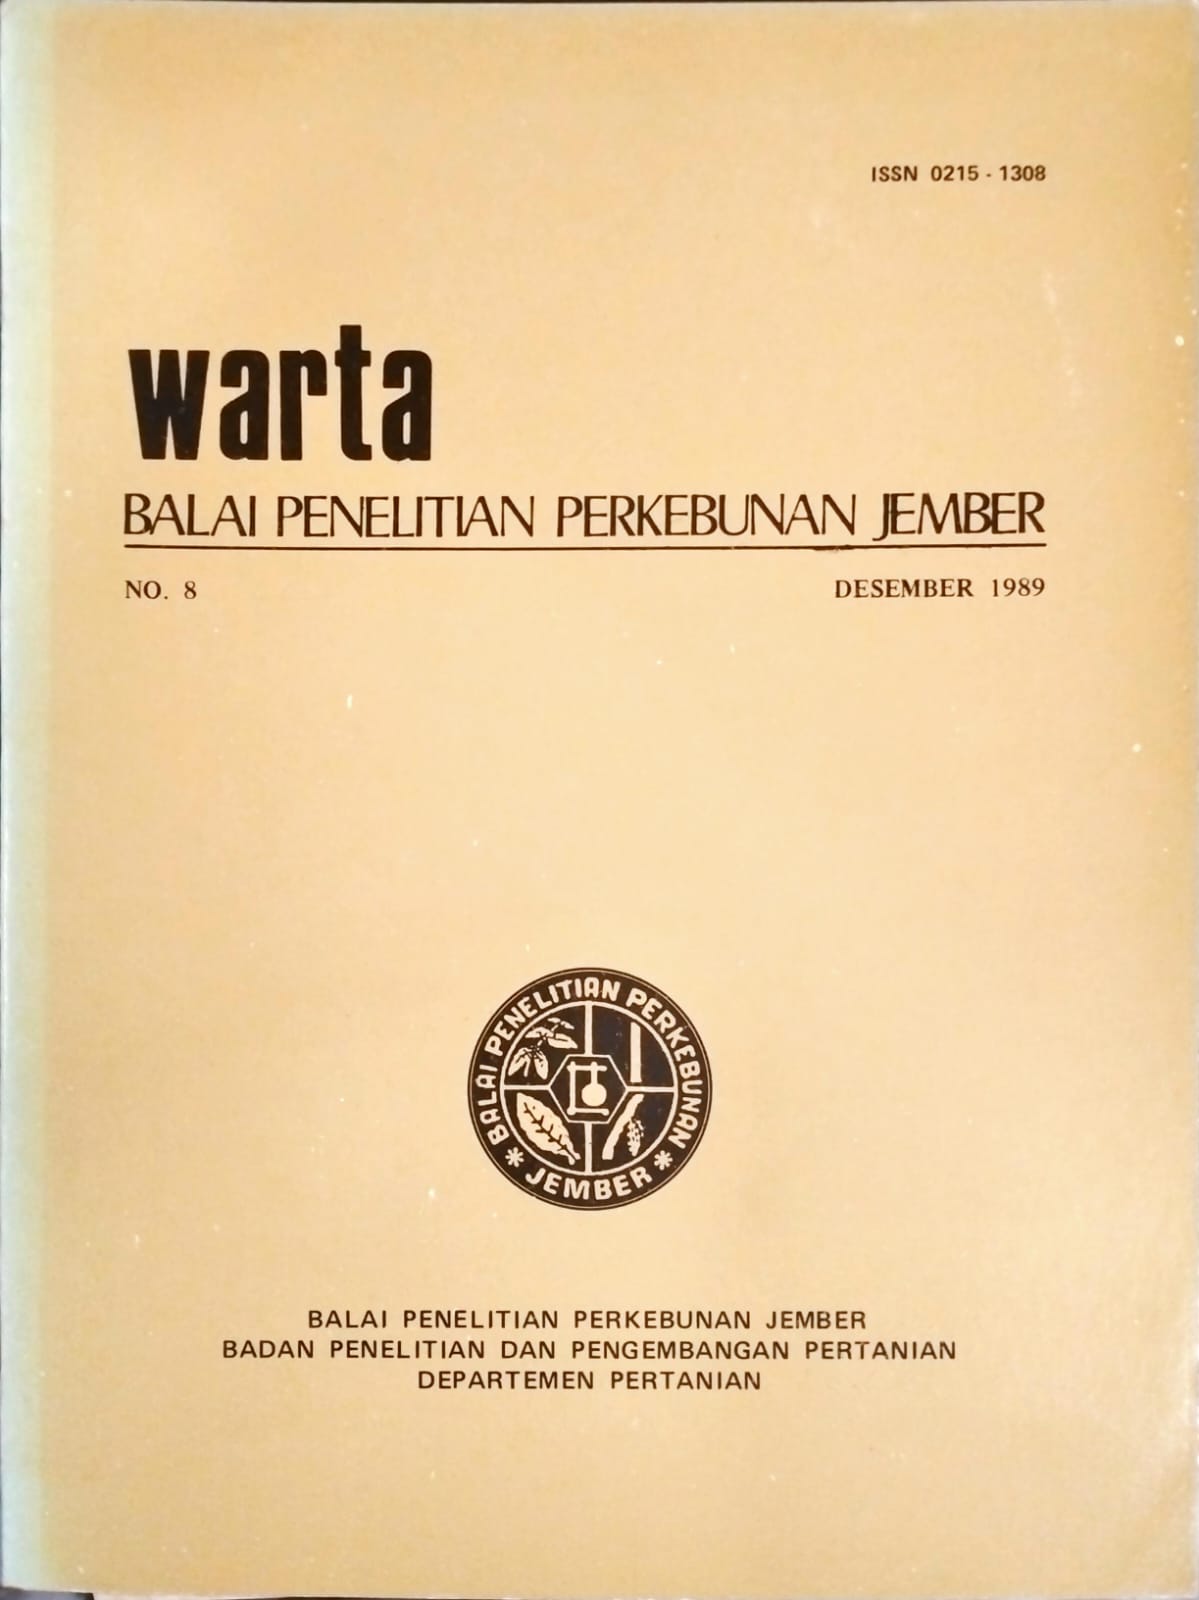 WARTA,BALAI PENELITIAN PERKEBUNAN JEMBER. NO. (8) DESEMBER 1989